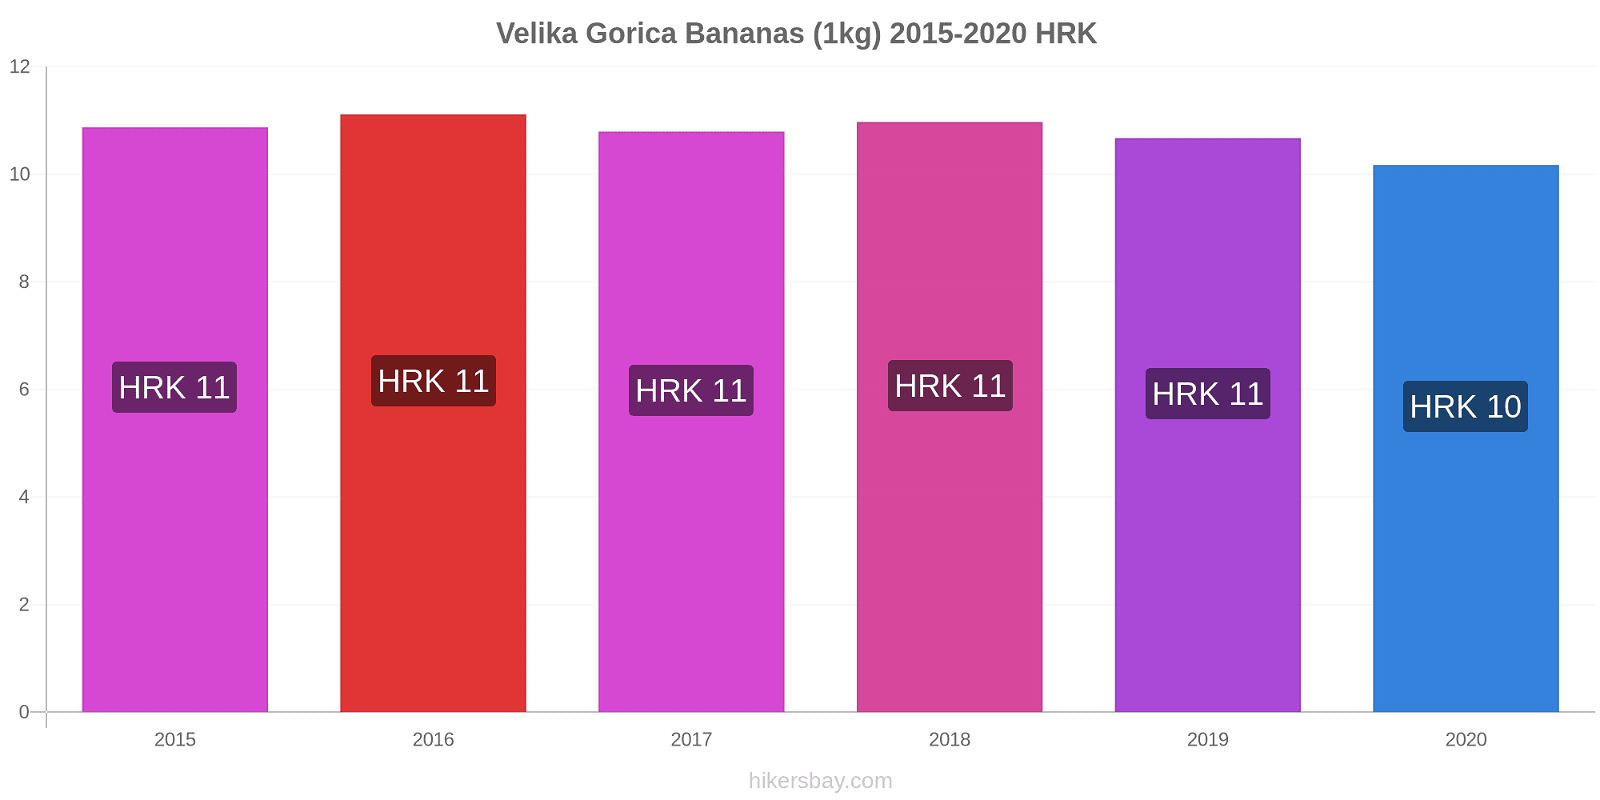 Velika Gorica price changes Bananas (1kg) hikersbay.com